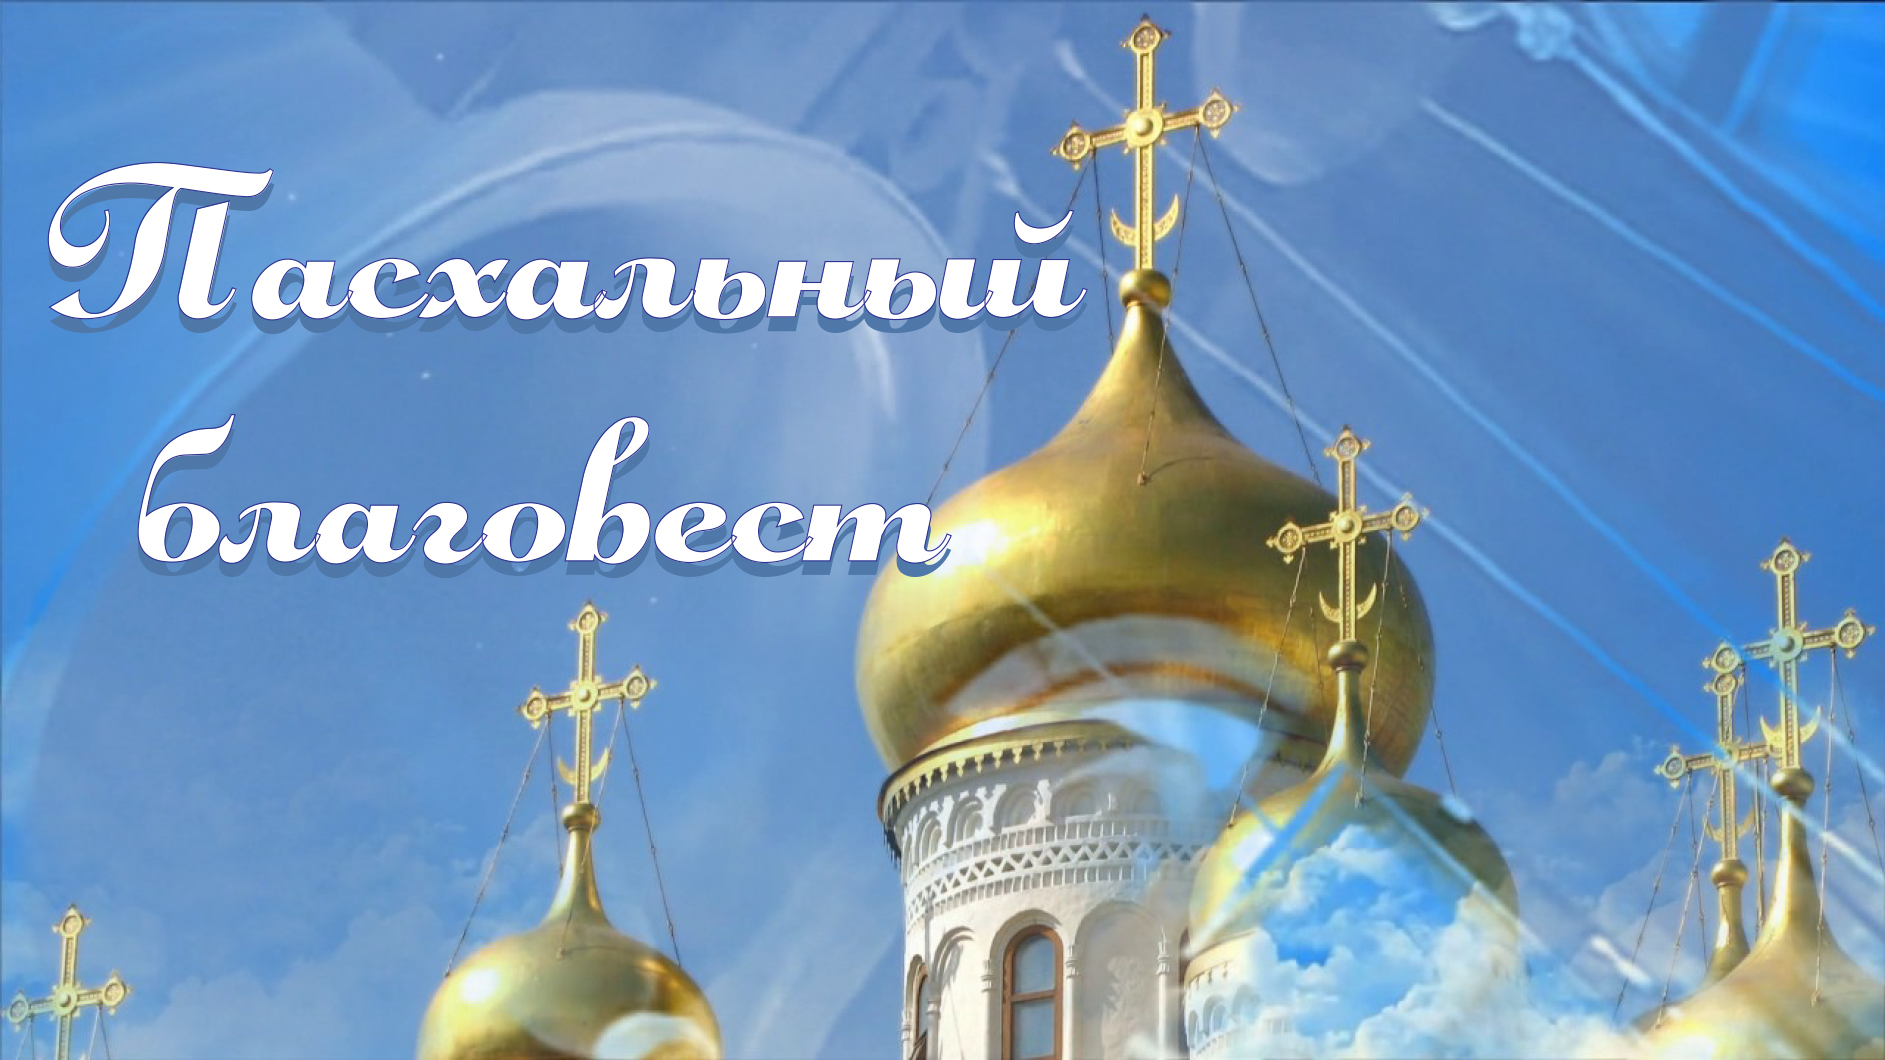 Презентации на православные темы